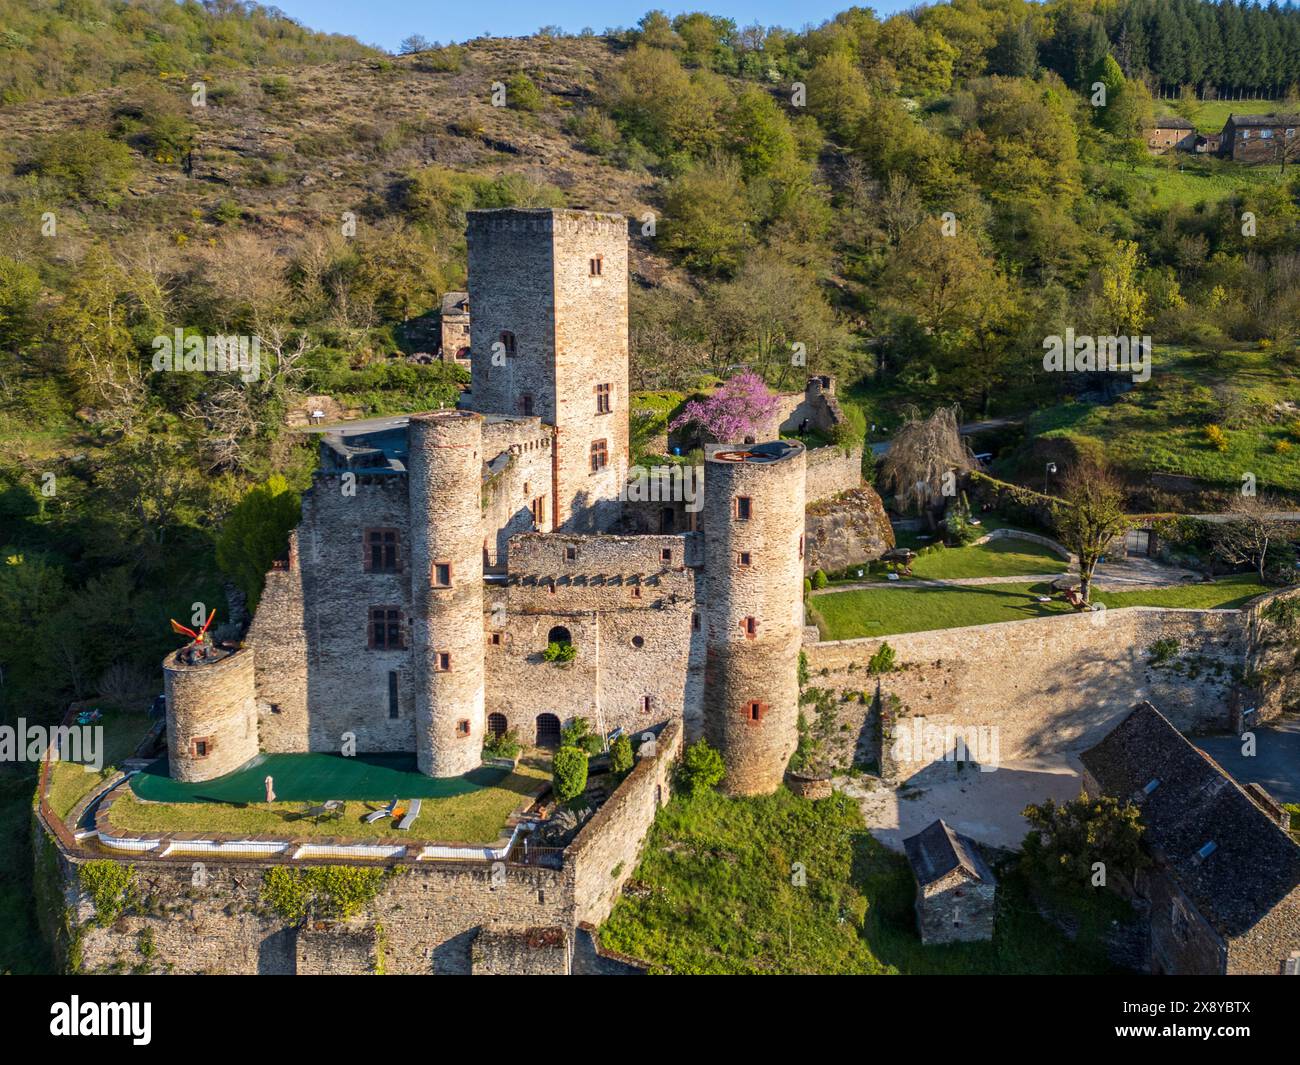 France, Aveyron, Belcastel, labellisé les plus beaux villages de France, le château du 11ème siècle restauré par Fernand Pouillon (vue aérienne) Banque D'Images